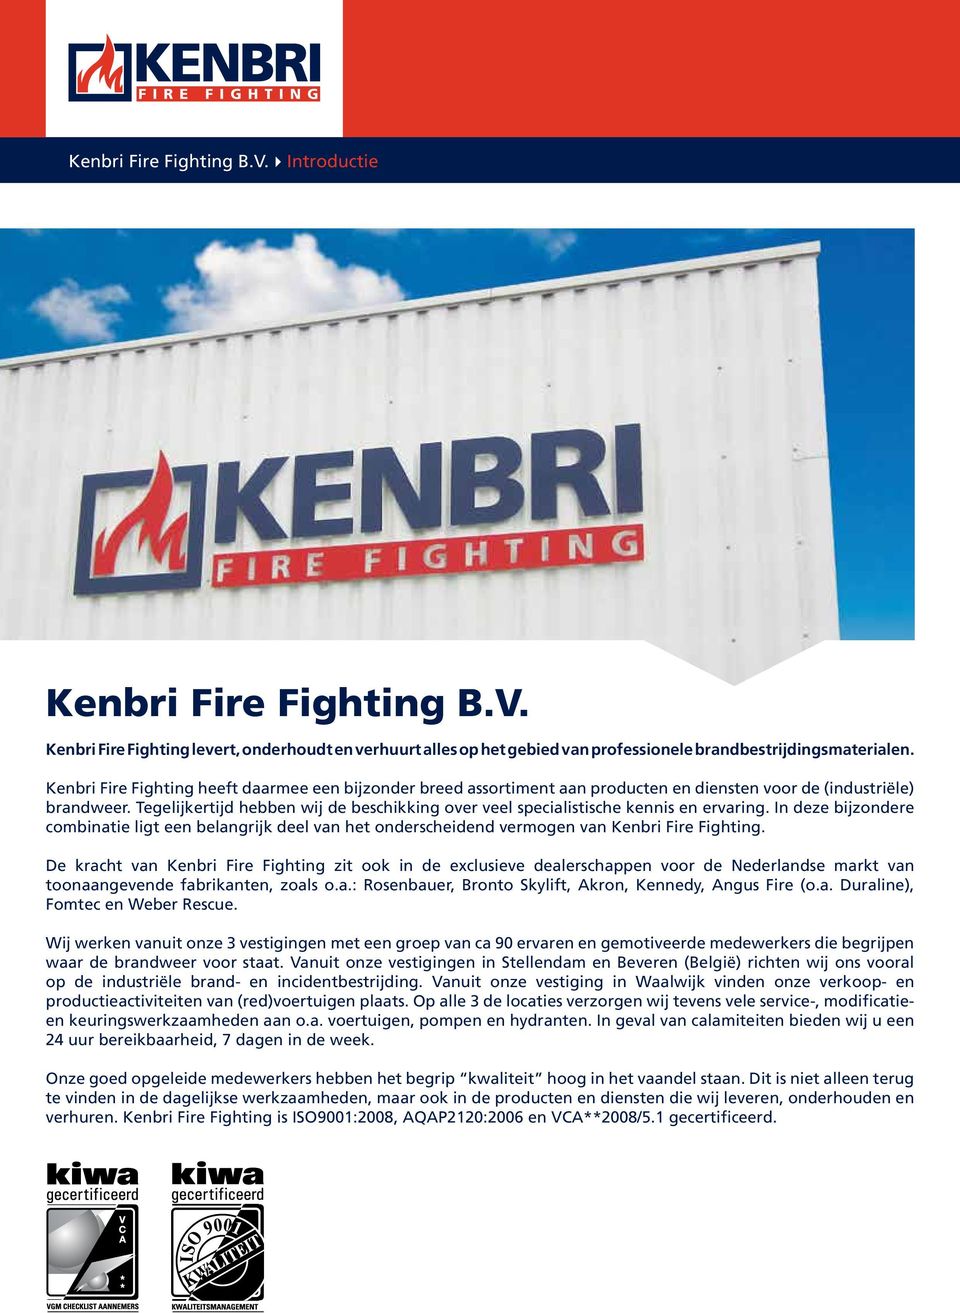 Tegelijkertijd hebben wij de beschikking over veel specialistische kennis en ervaring. In deze bijzondere combinatie ligt een belangrijk deel van het onderscheidend vermogen van Kenbri Fire Fighting.